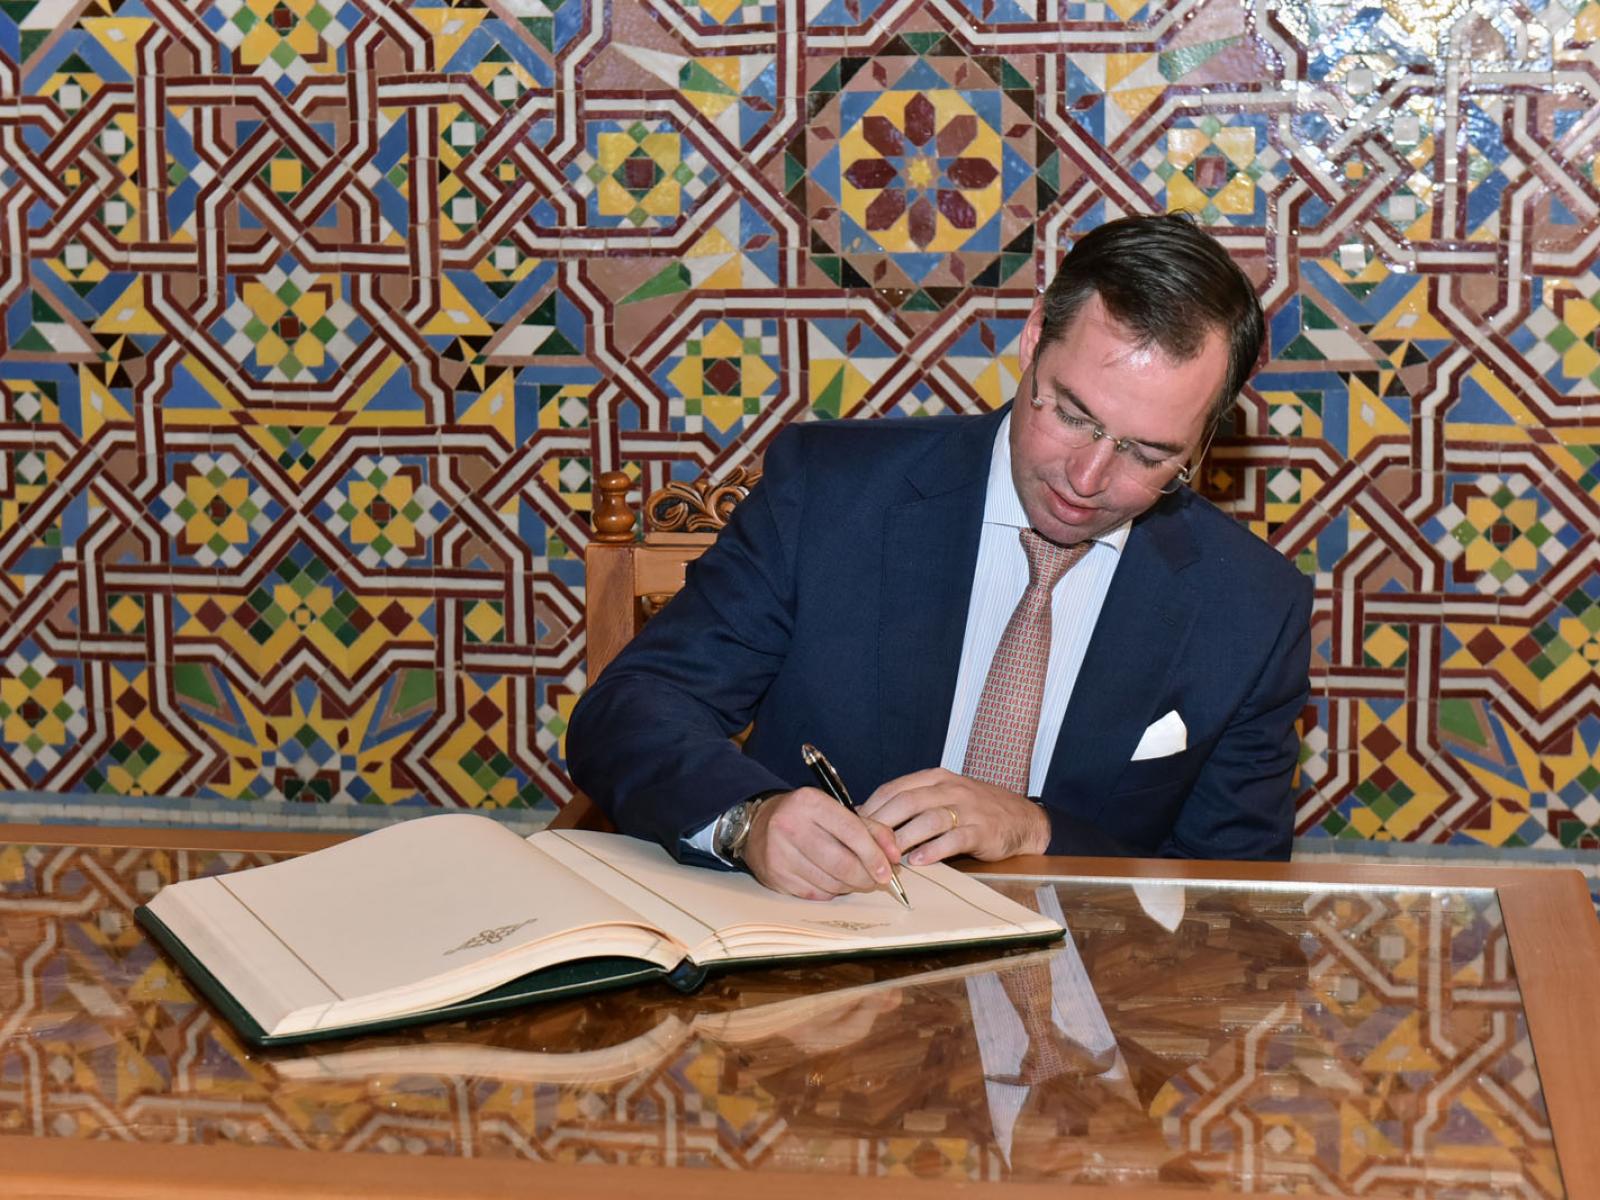 Le Prince signe le livre d'or après la visite de la Mosquée